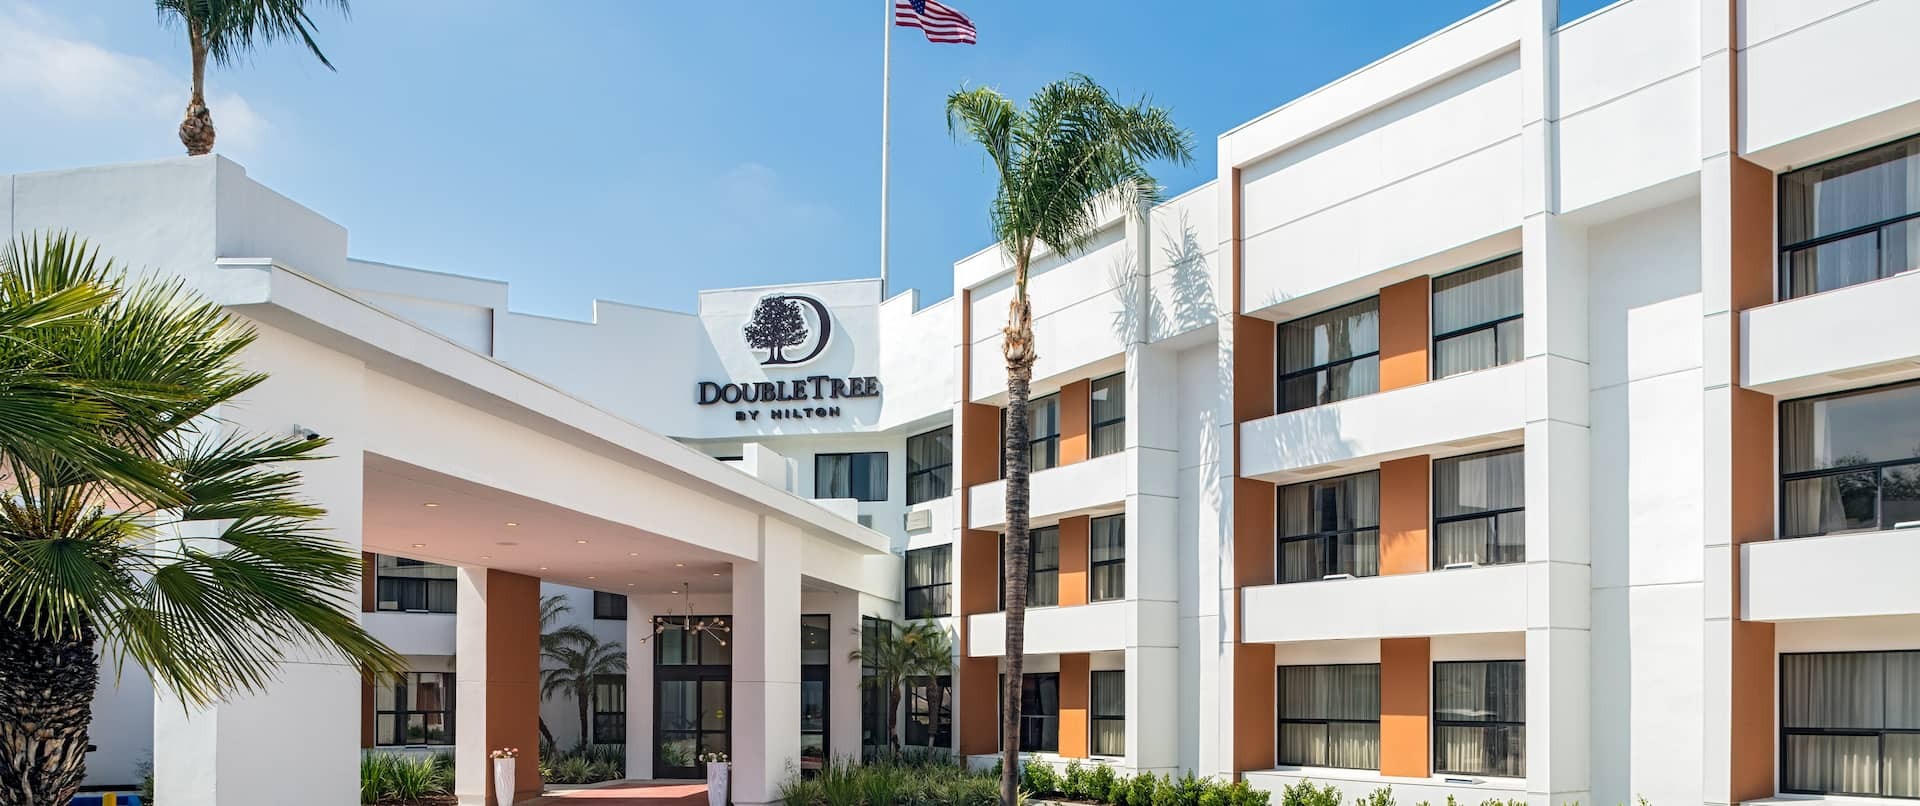 Photo of Doubletree by Hilton Pomona, Pomona, CA